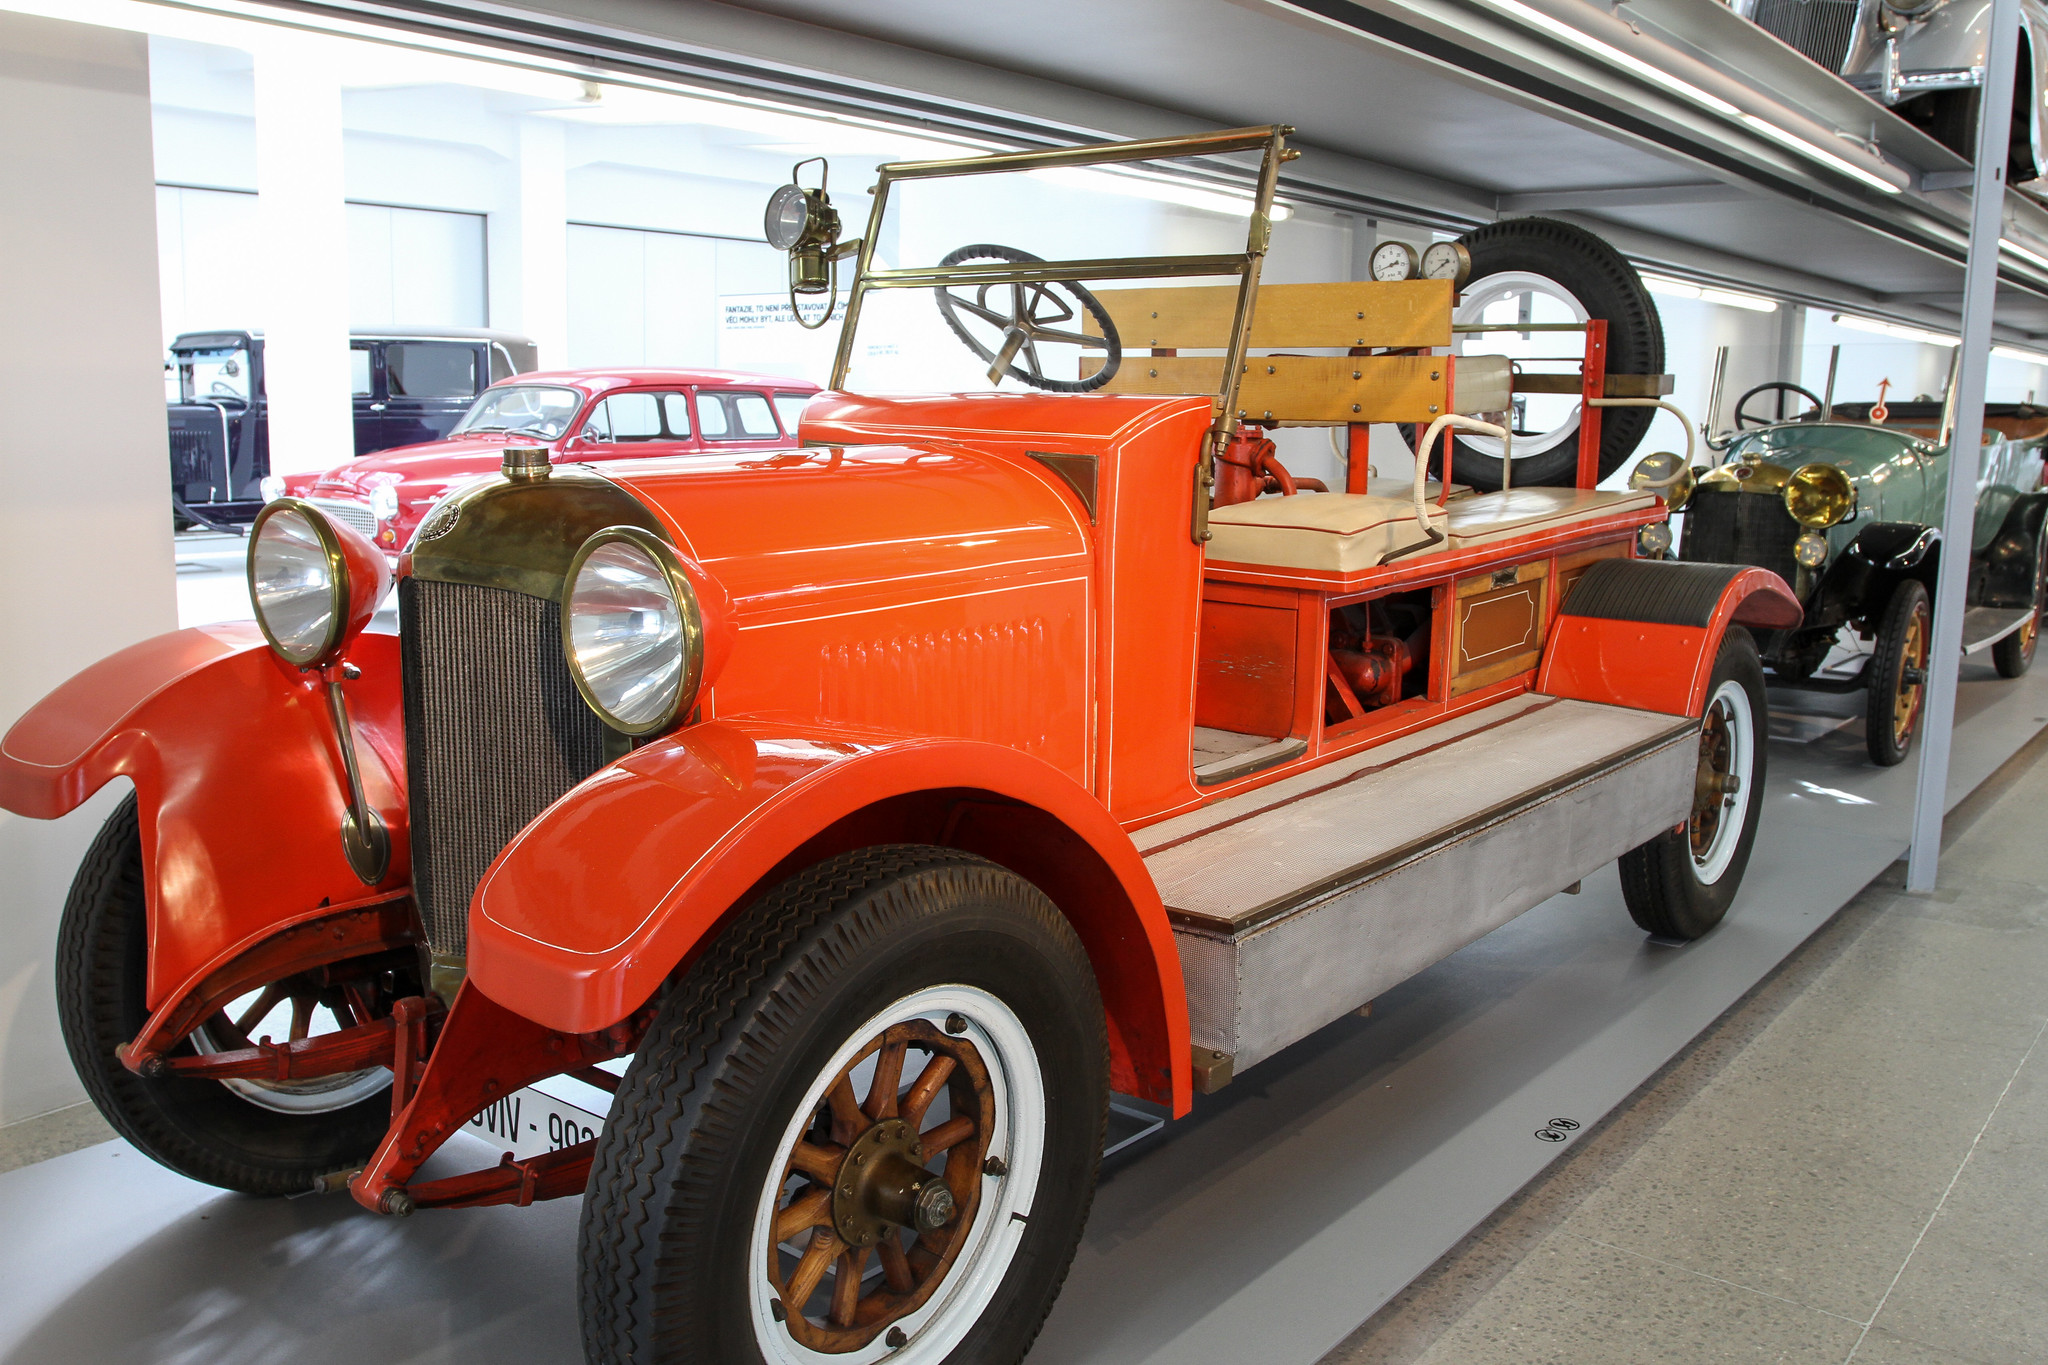 4-Zylinder-Motor, 4713 qcm, 50 PS, 4+R Getriebe, 90 km/h, Bauzeit 1917 bis 1923.